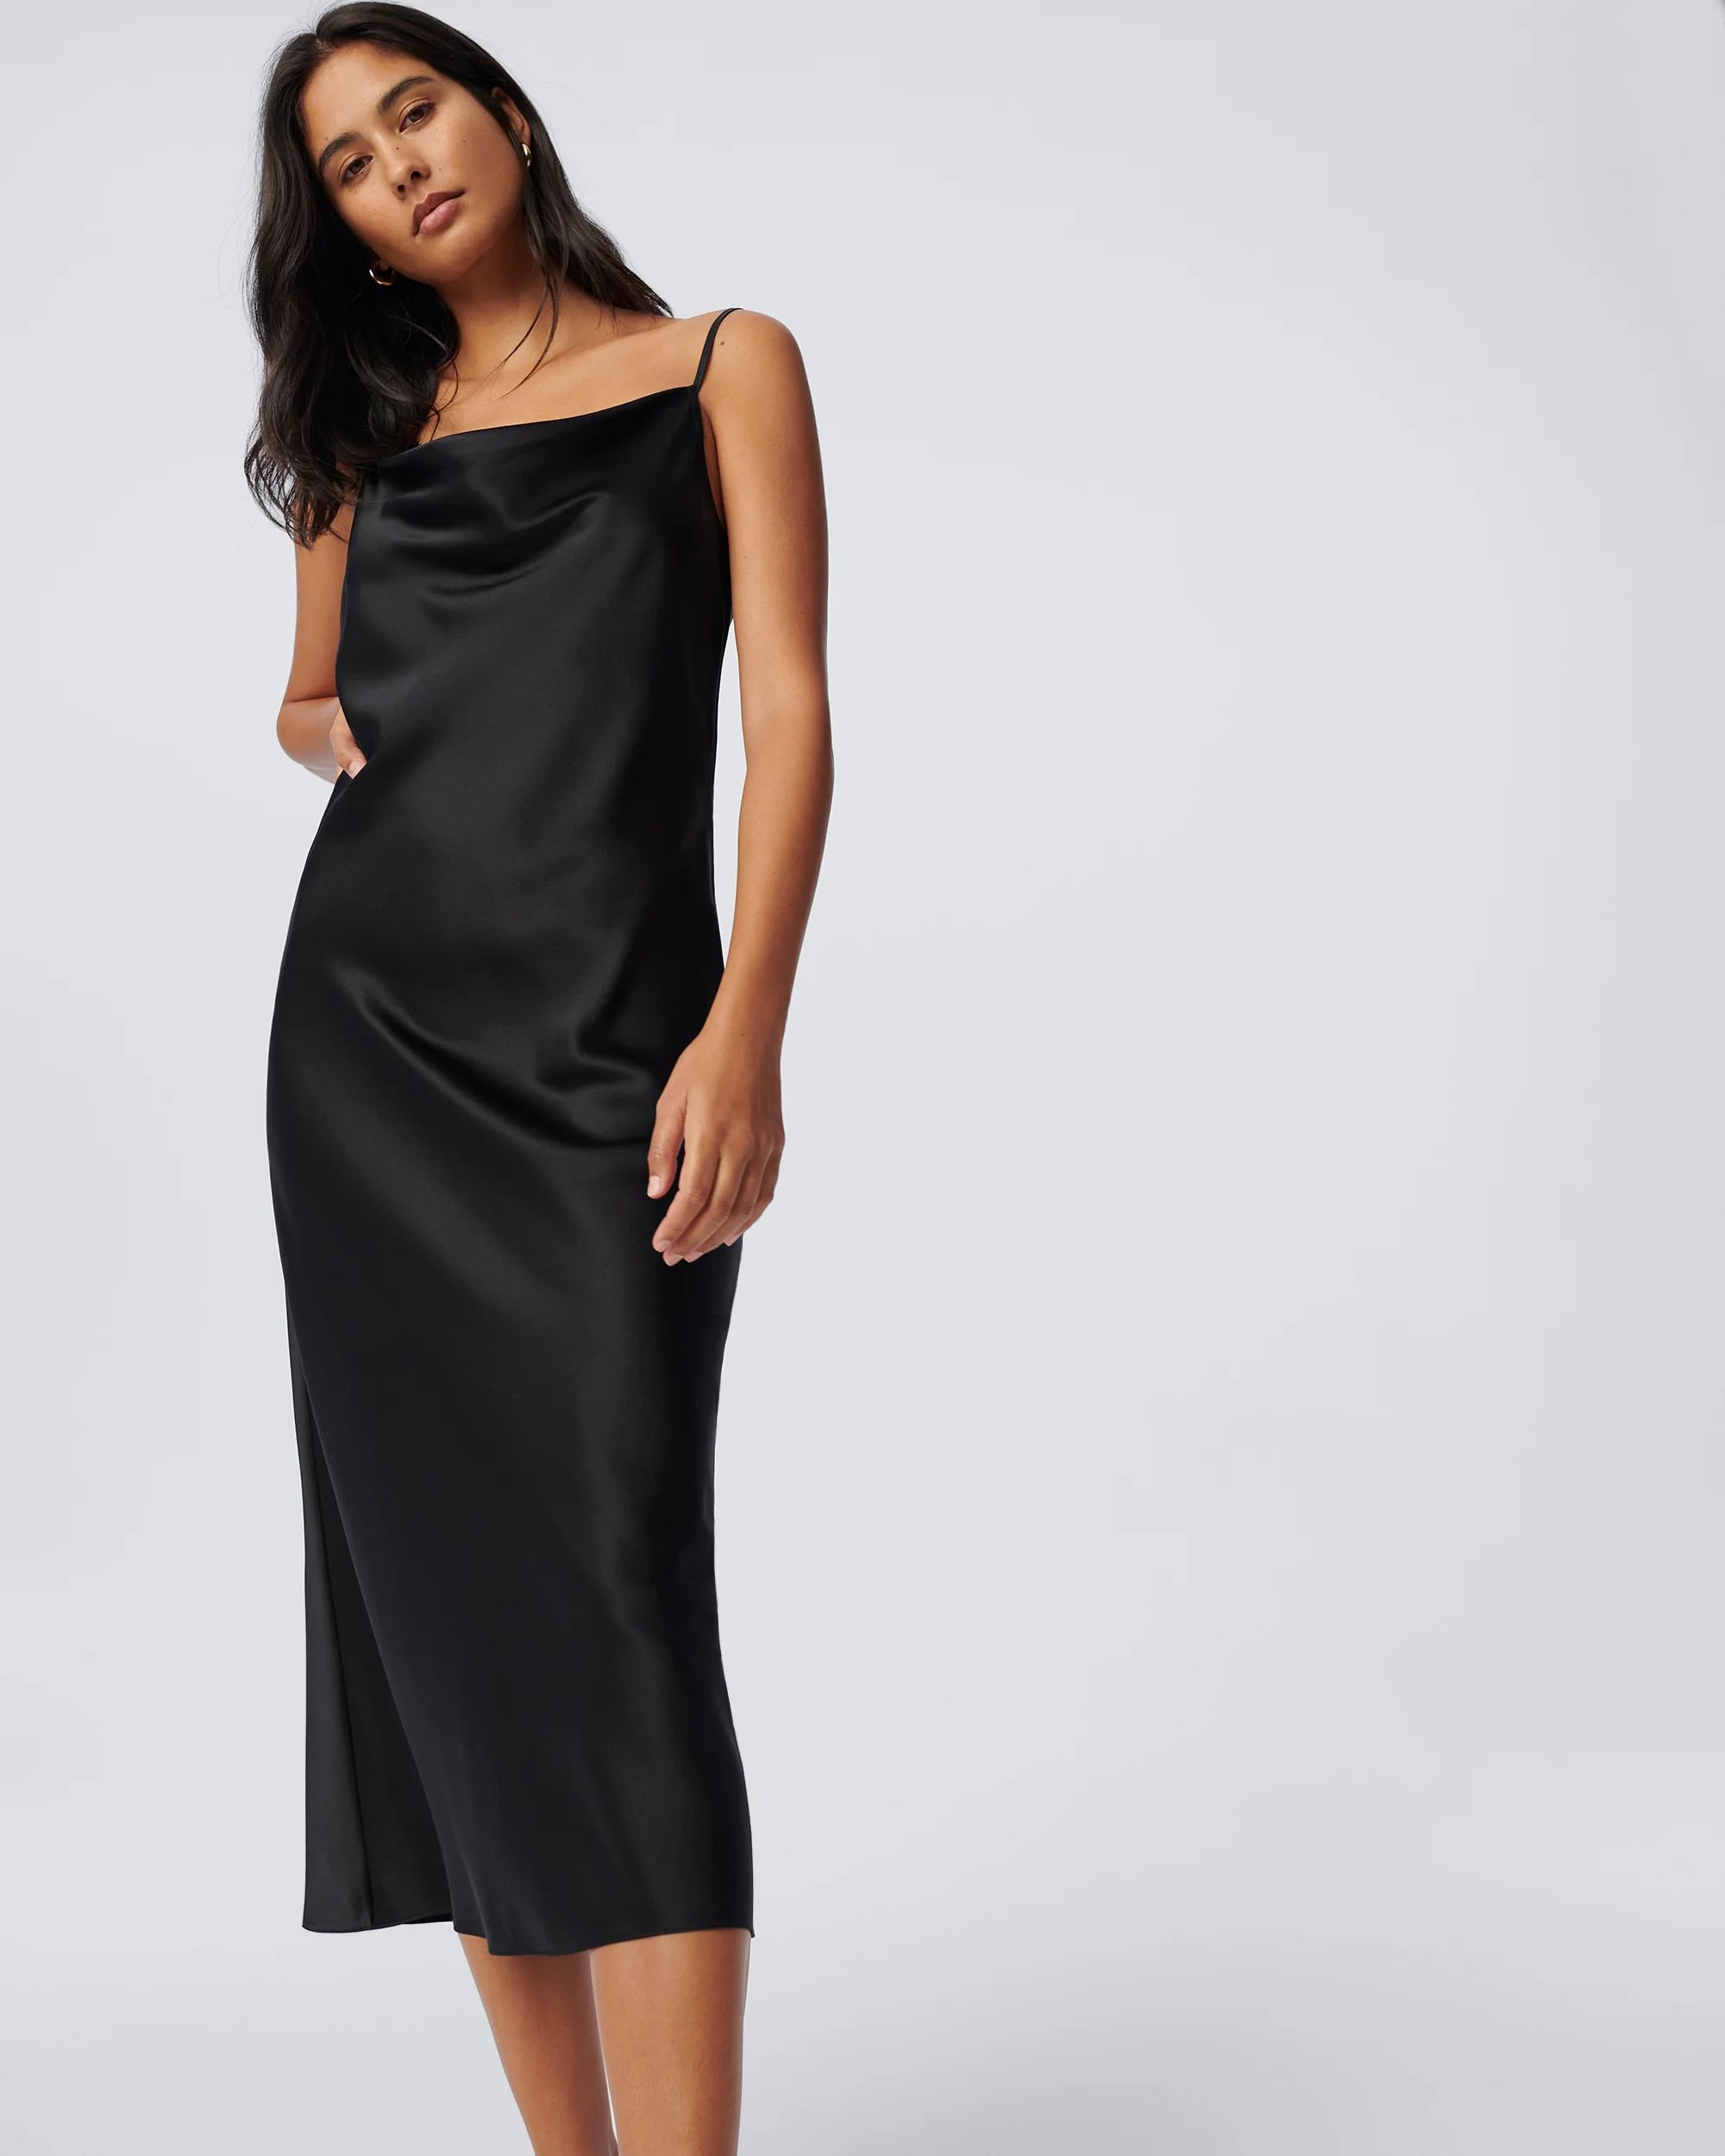 Brioni Silk Slip Dress in Black | Diane von Furstenberg US - Dynamic